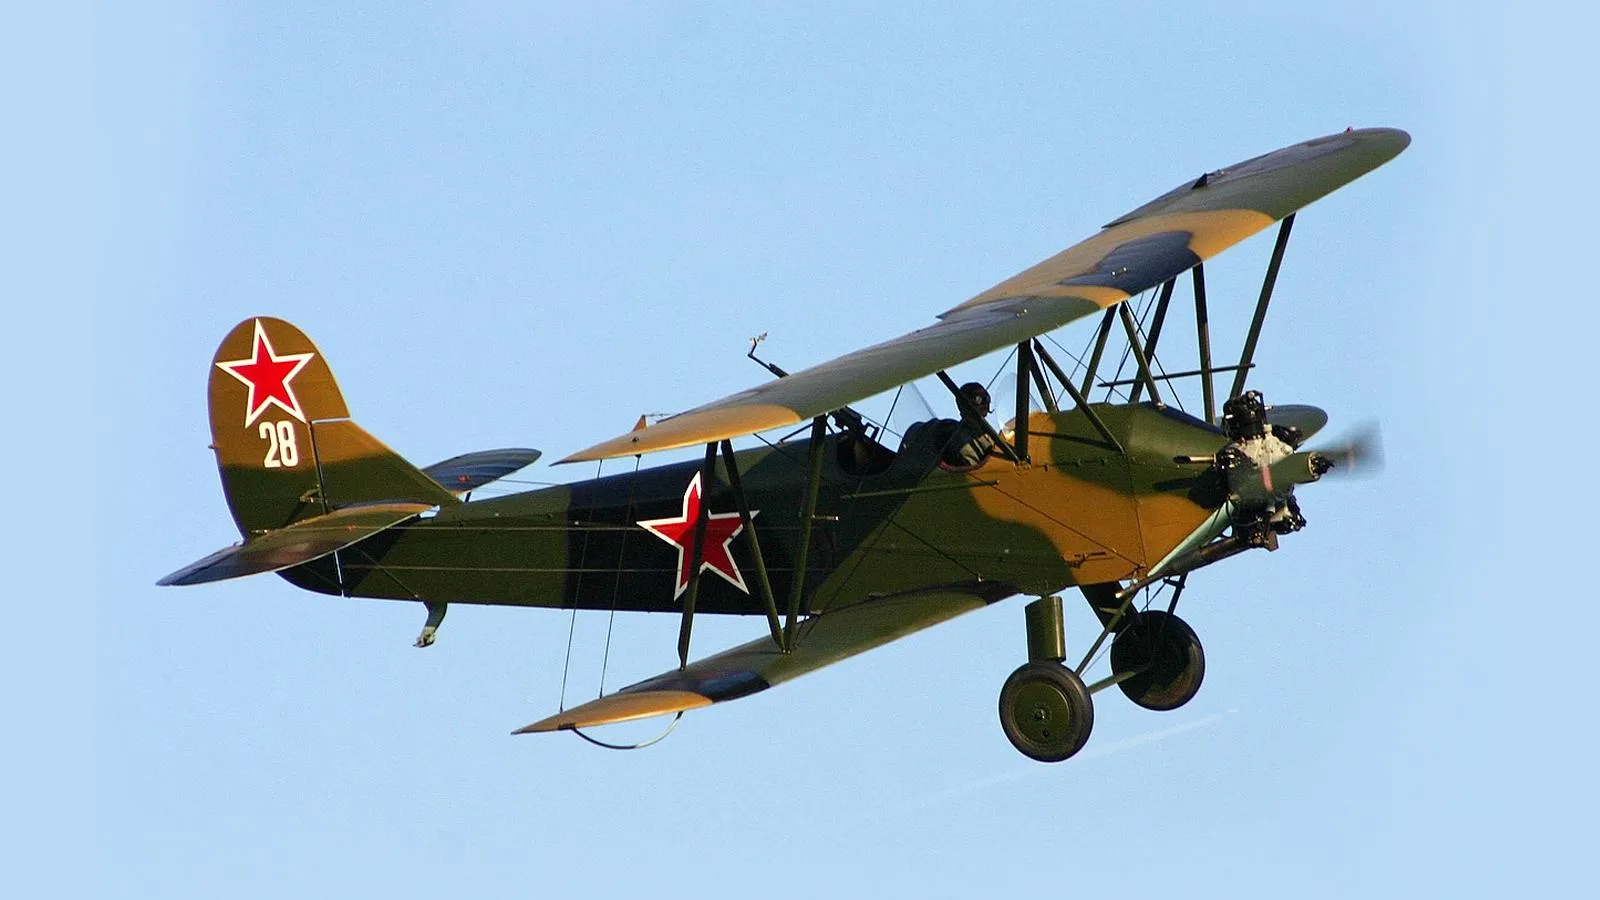 Советский многоцелевой биплан У-2 (с 1944 года — По-2), созданный в 1927 году под руководством авиаконструктора Николая Поликарпова